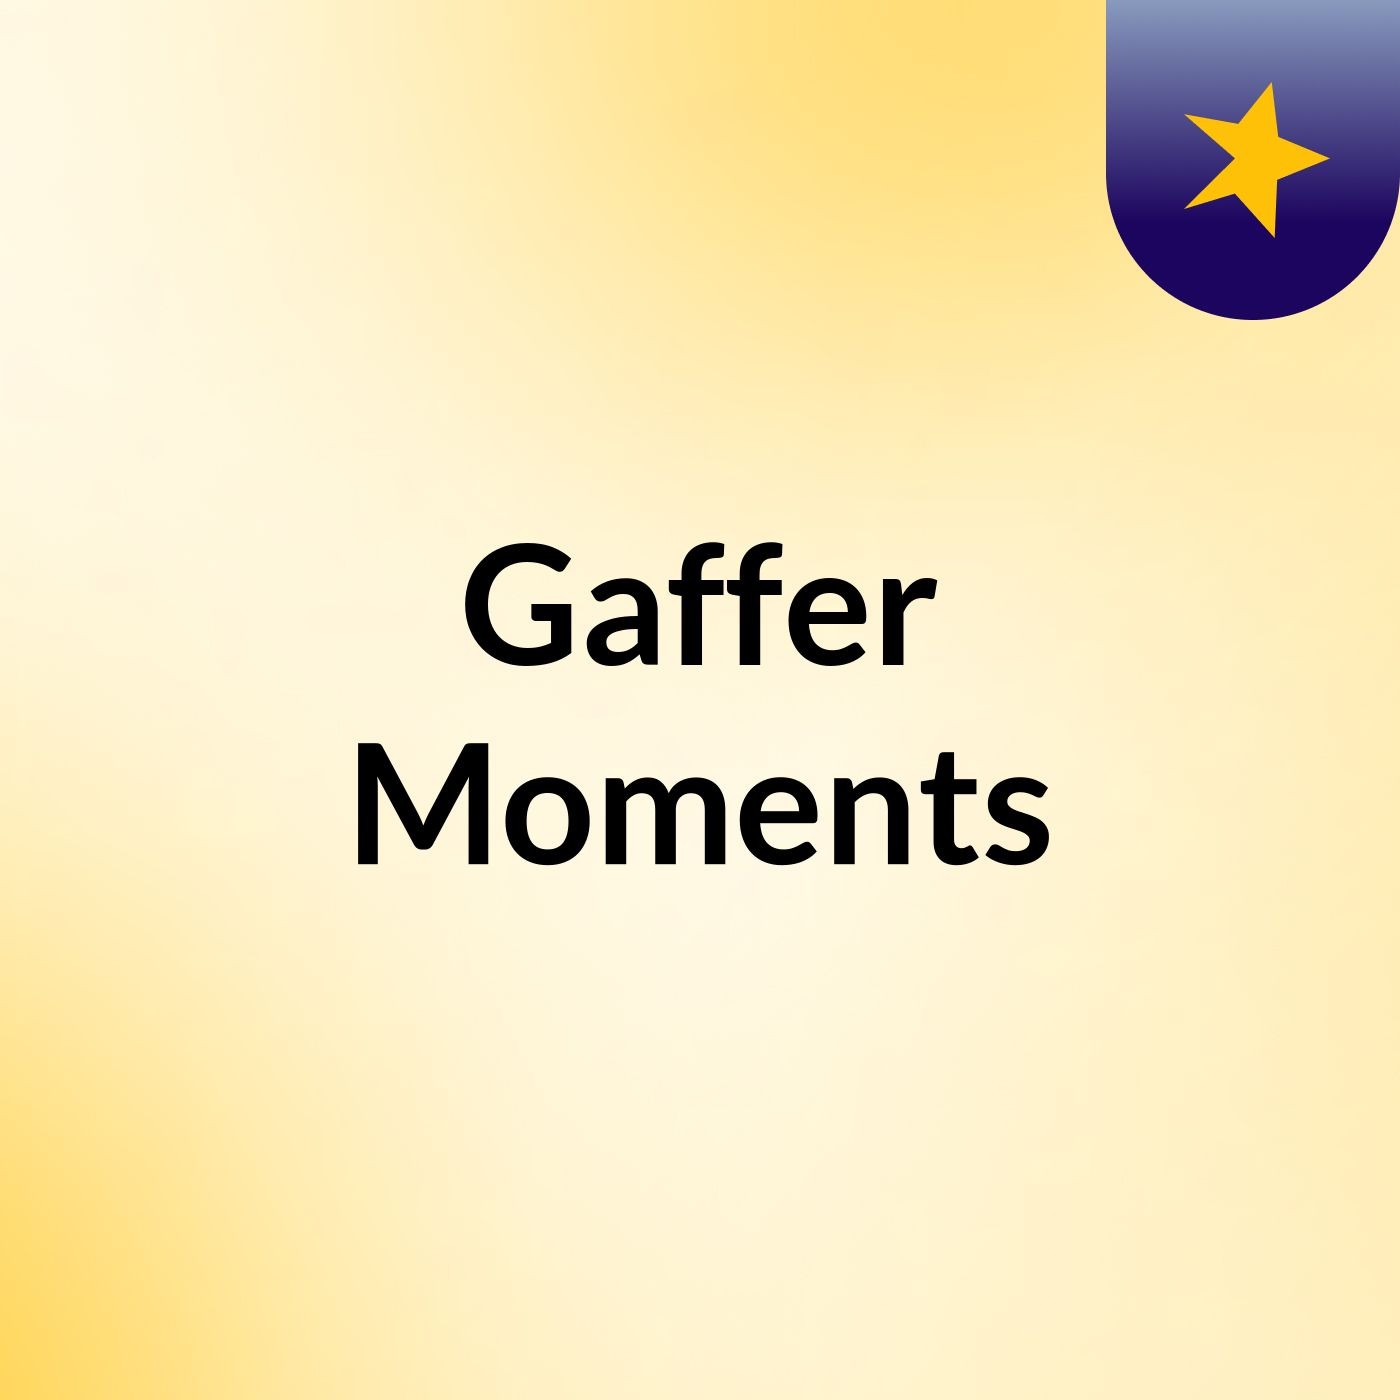 Episode 3 - Gaffer Moments